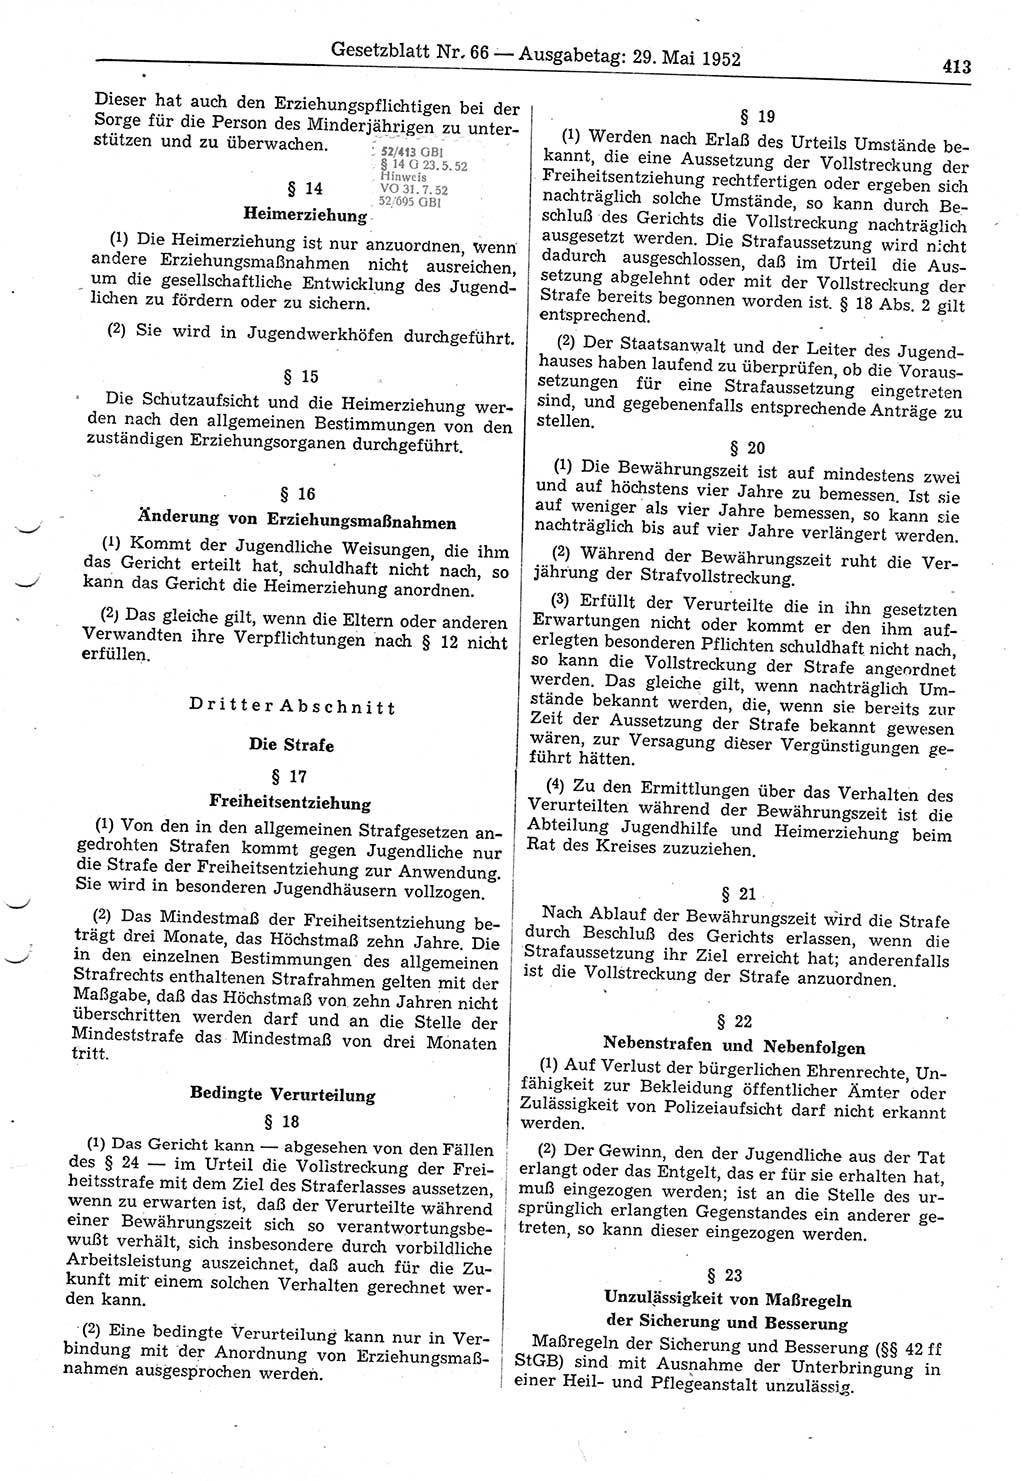 Gesetzblatt (GBl.) der Deutschen Demokratischen Republik (DDR) 1952, Seite 413 (GBl. DDR 1952, S. 413)